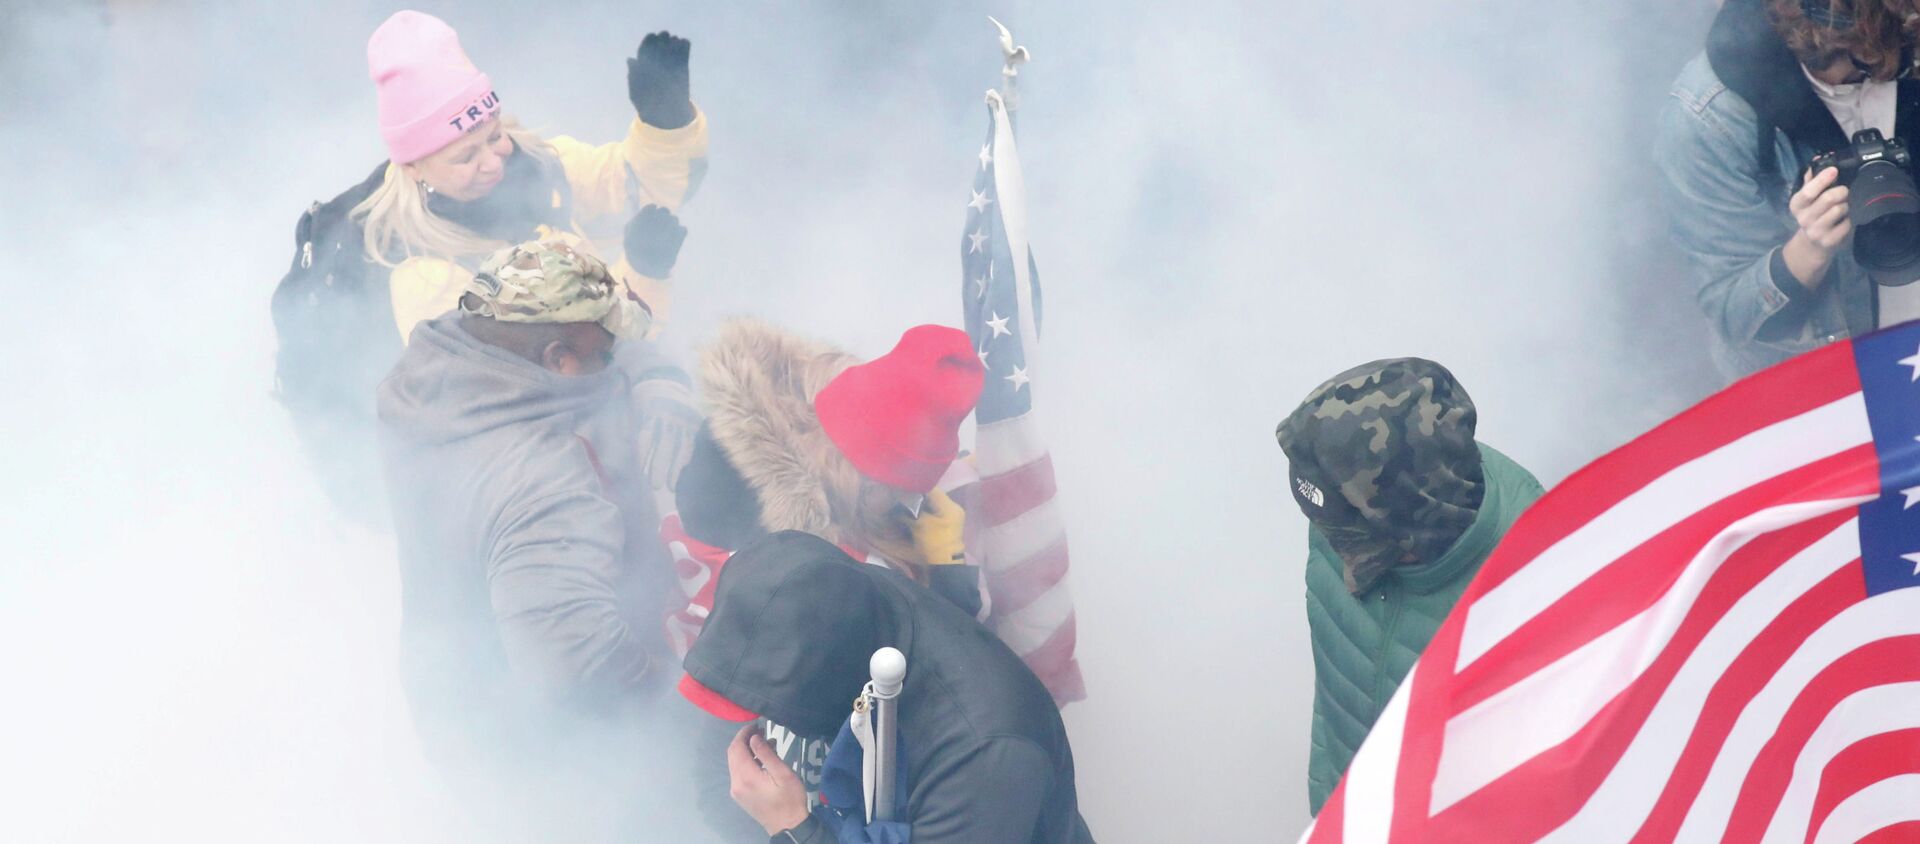 Протестующие, выступающие за Трампа в облаке слезоточивого газа во время столкновений с полицией у здания Капитолия в Вашингтоне - Sputnik Кыргызстан, 1920, 14.01.2021